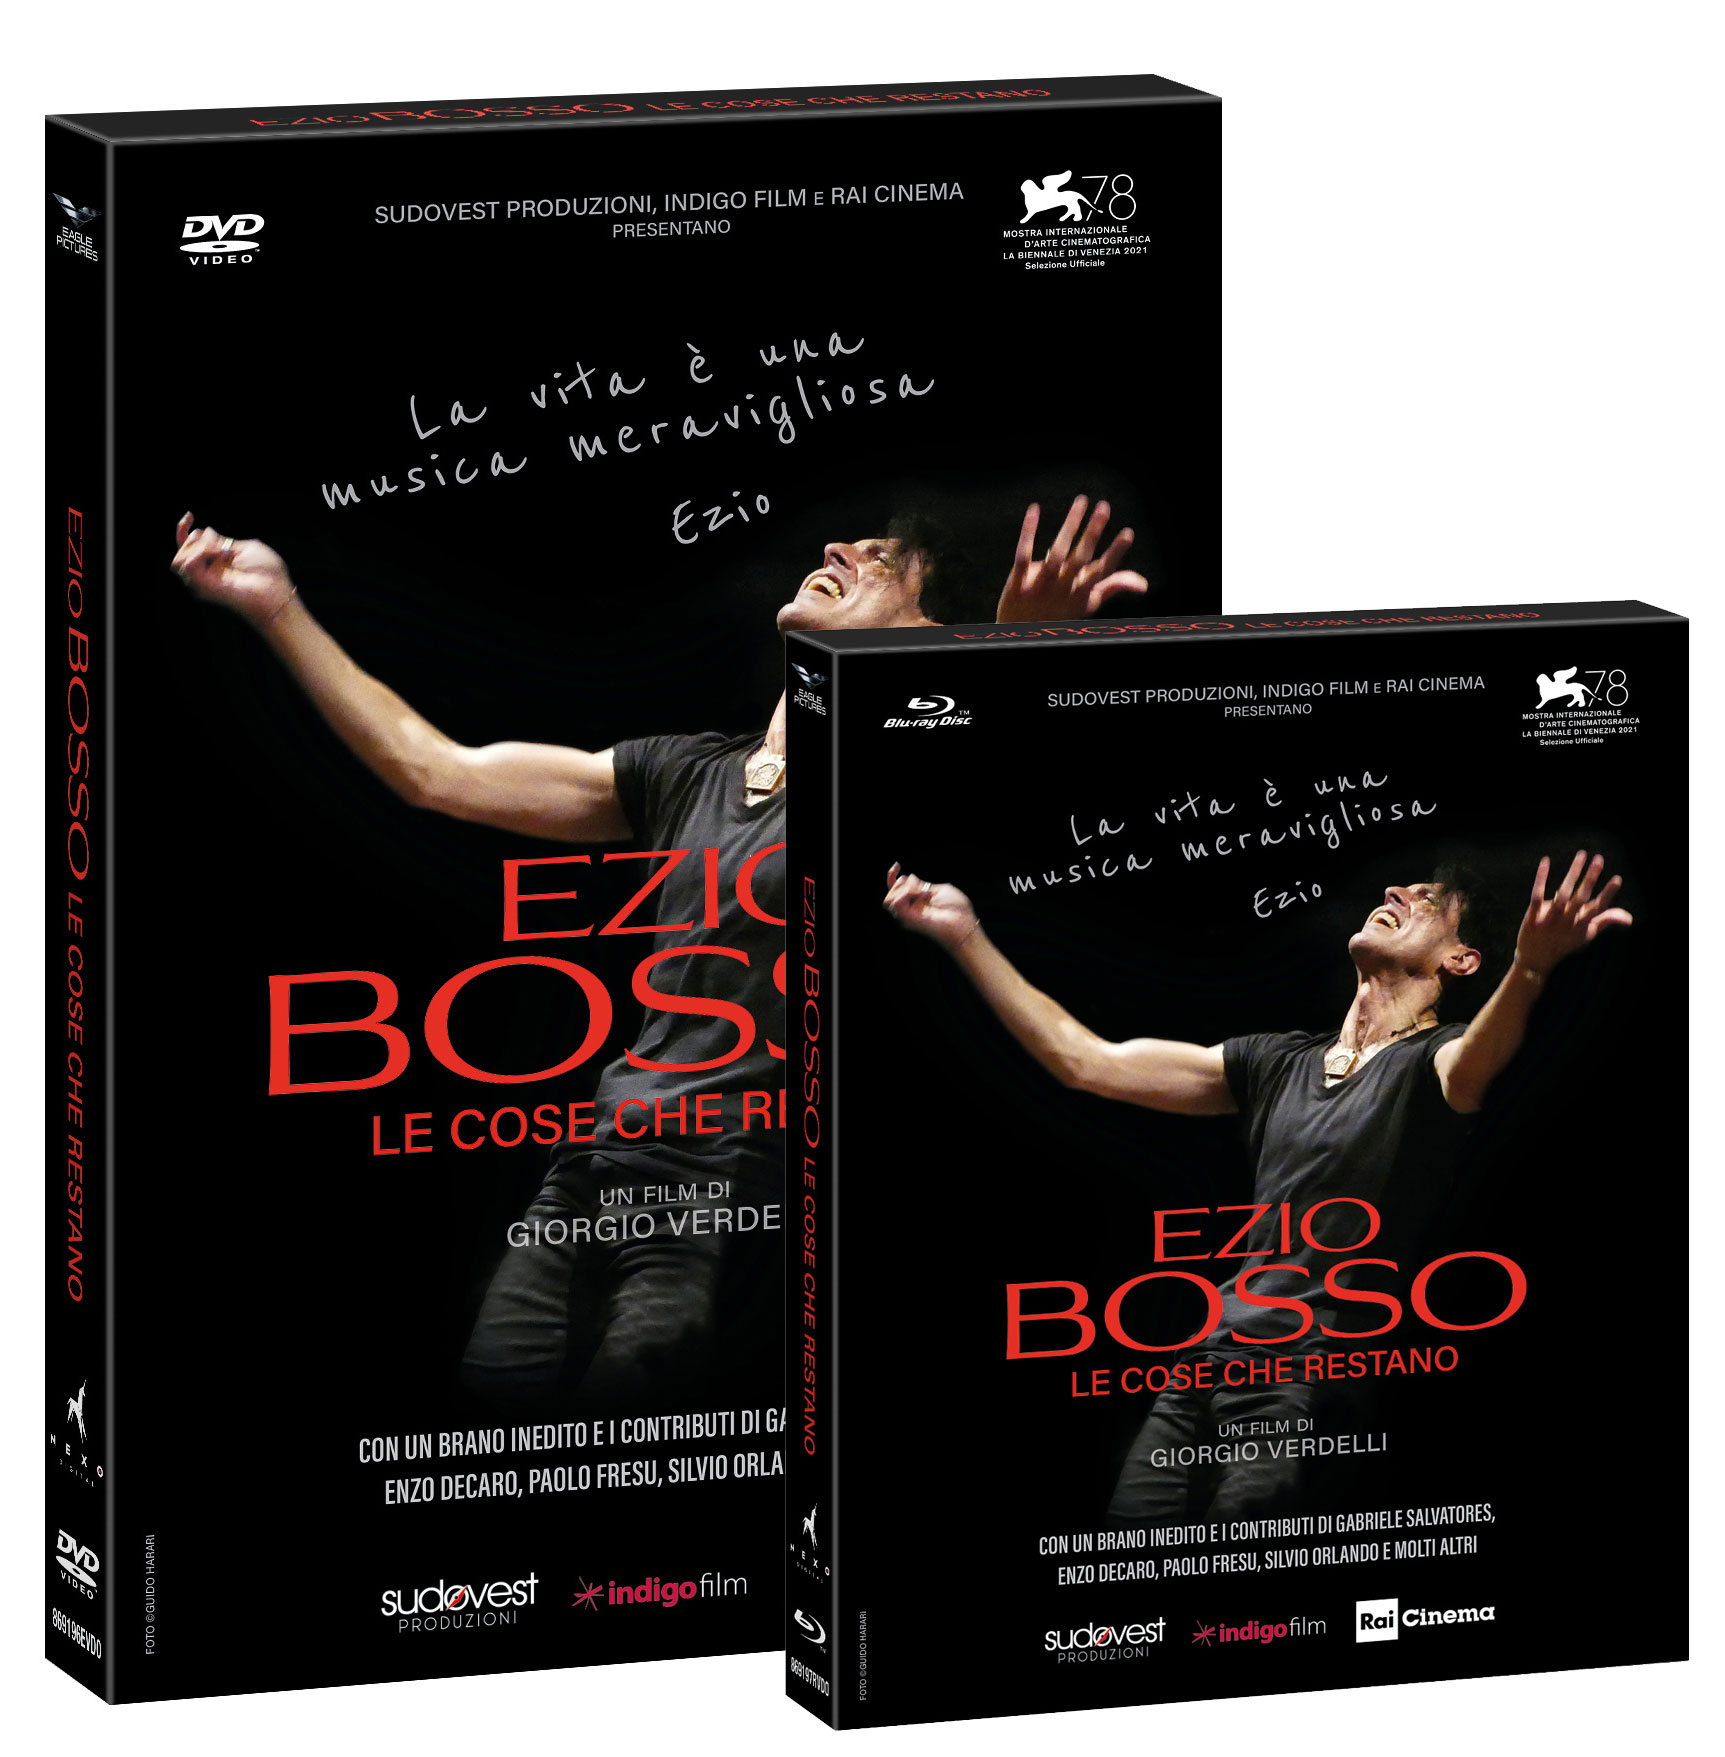 Ezio Bosso - Le Cose Che Restano di Giorgio Verdelli in DVD e Bluray